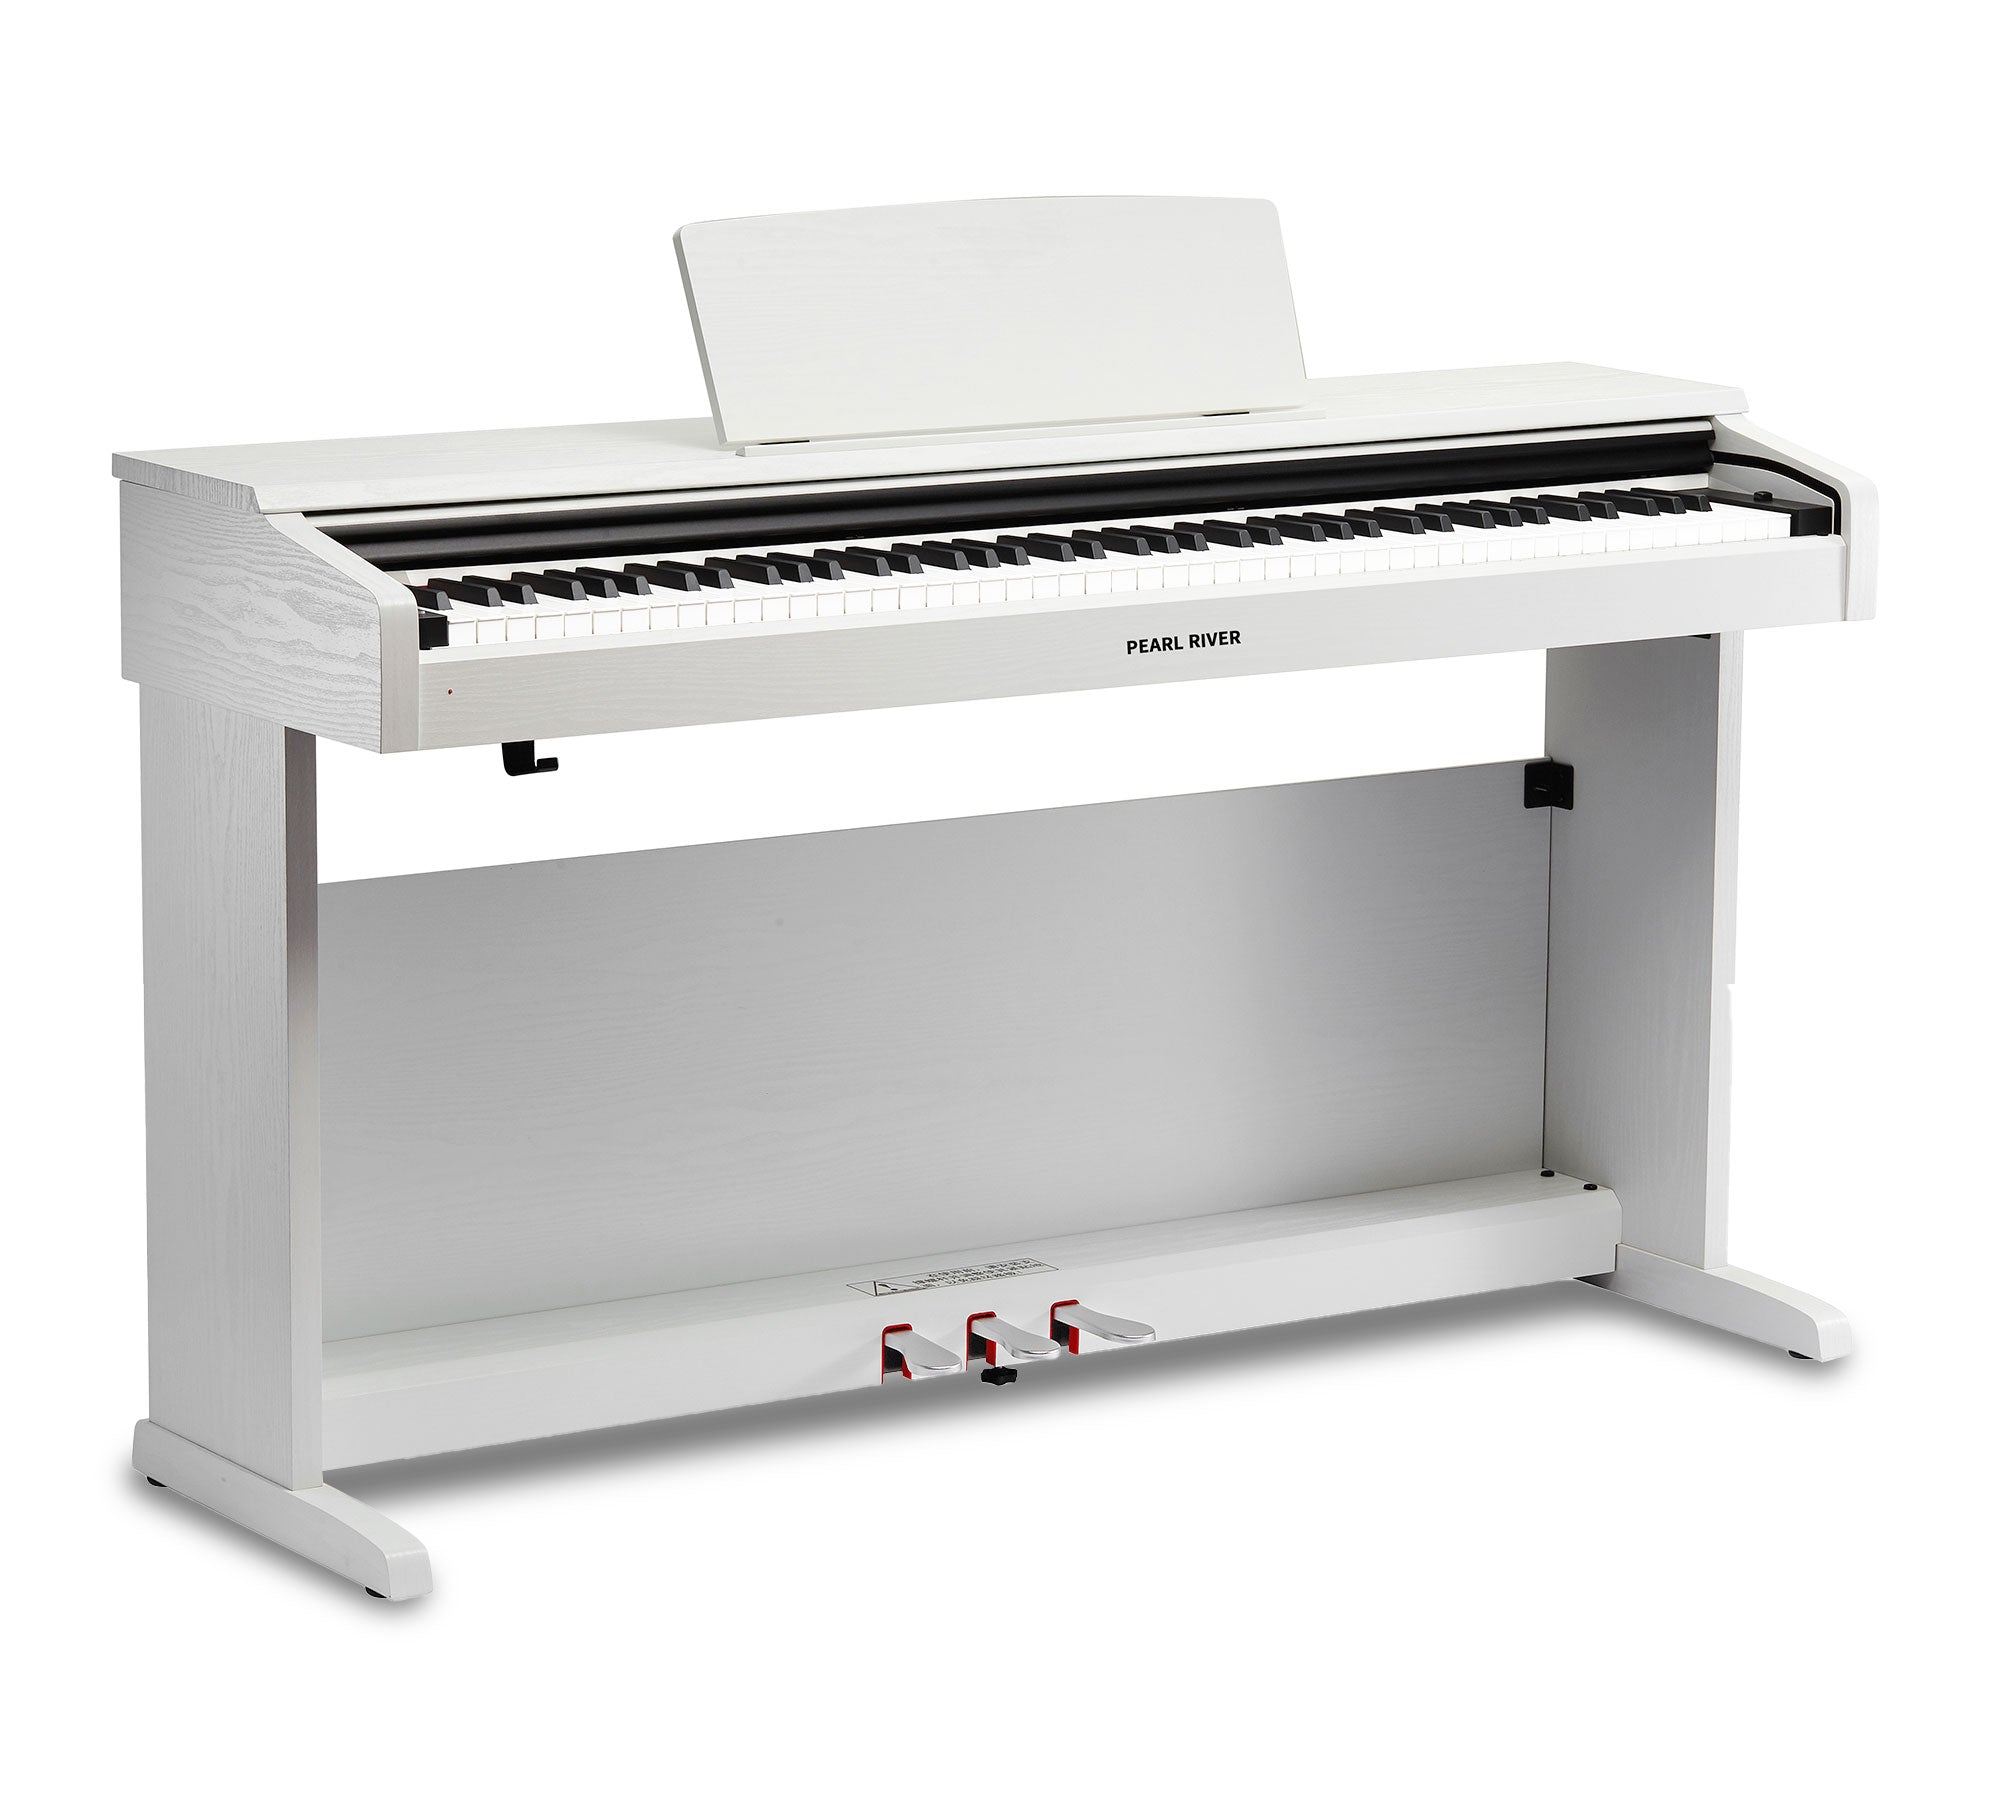 Pearl River Digital Piano - White